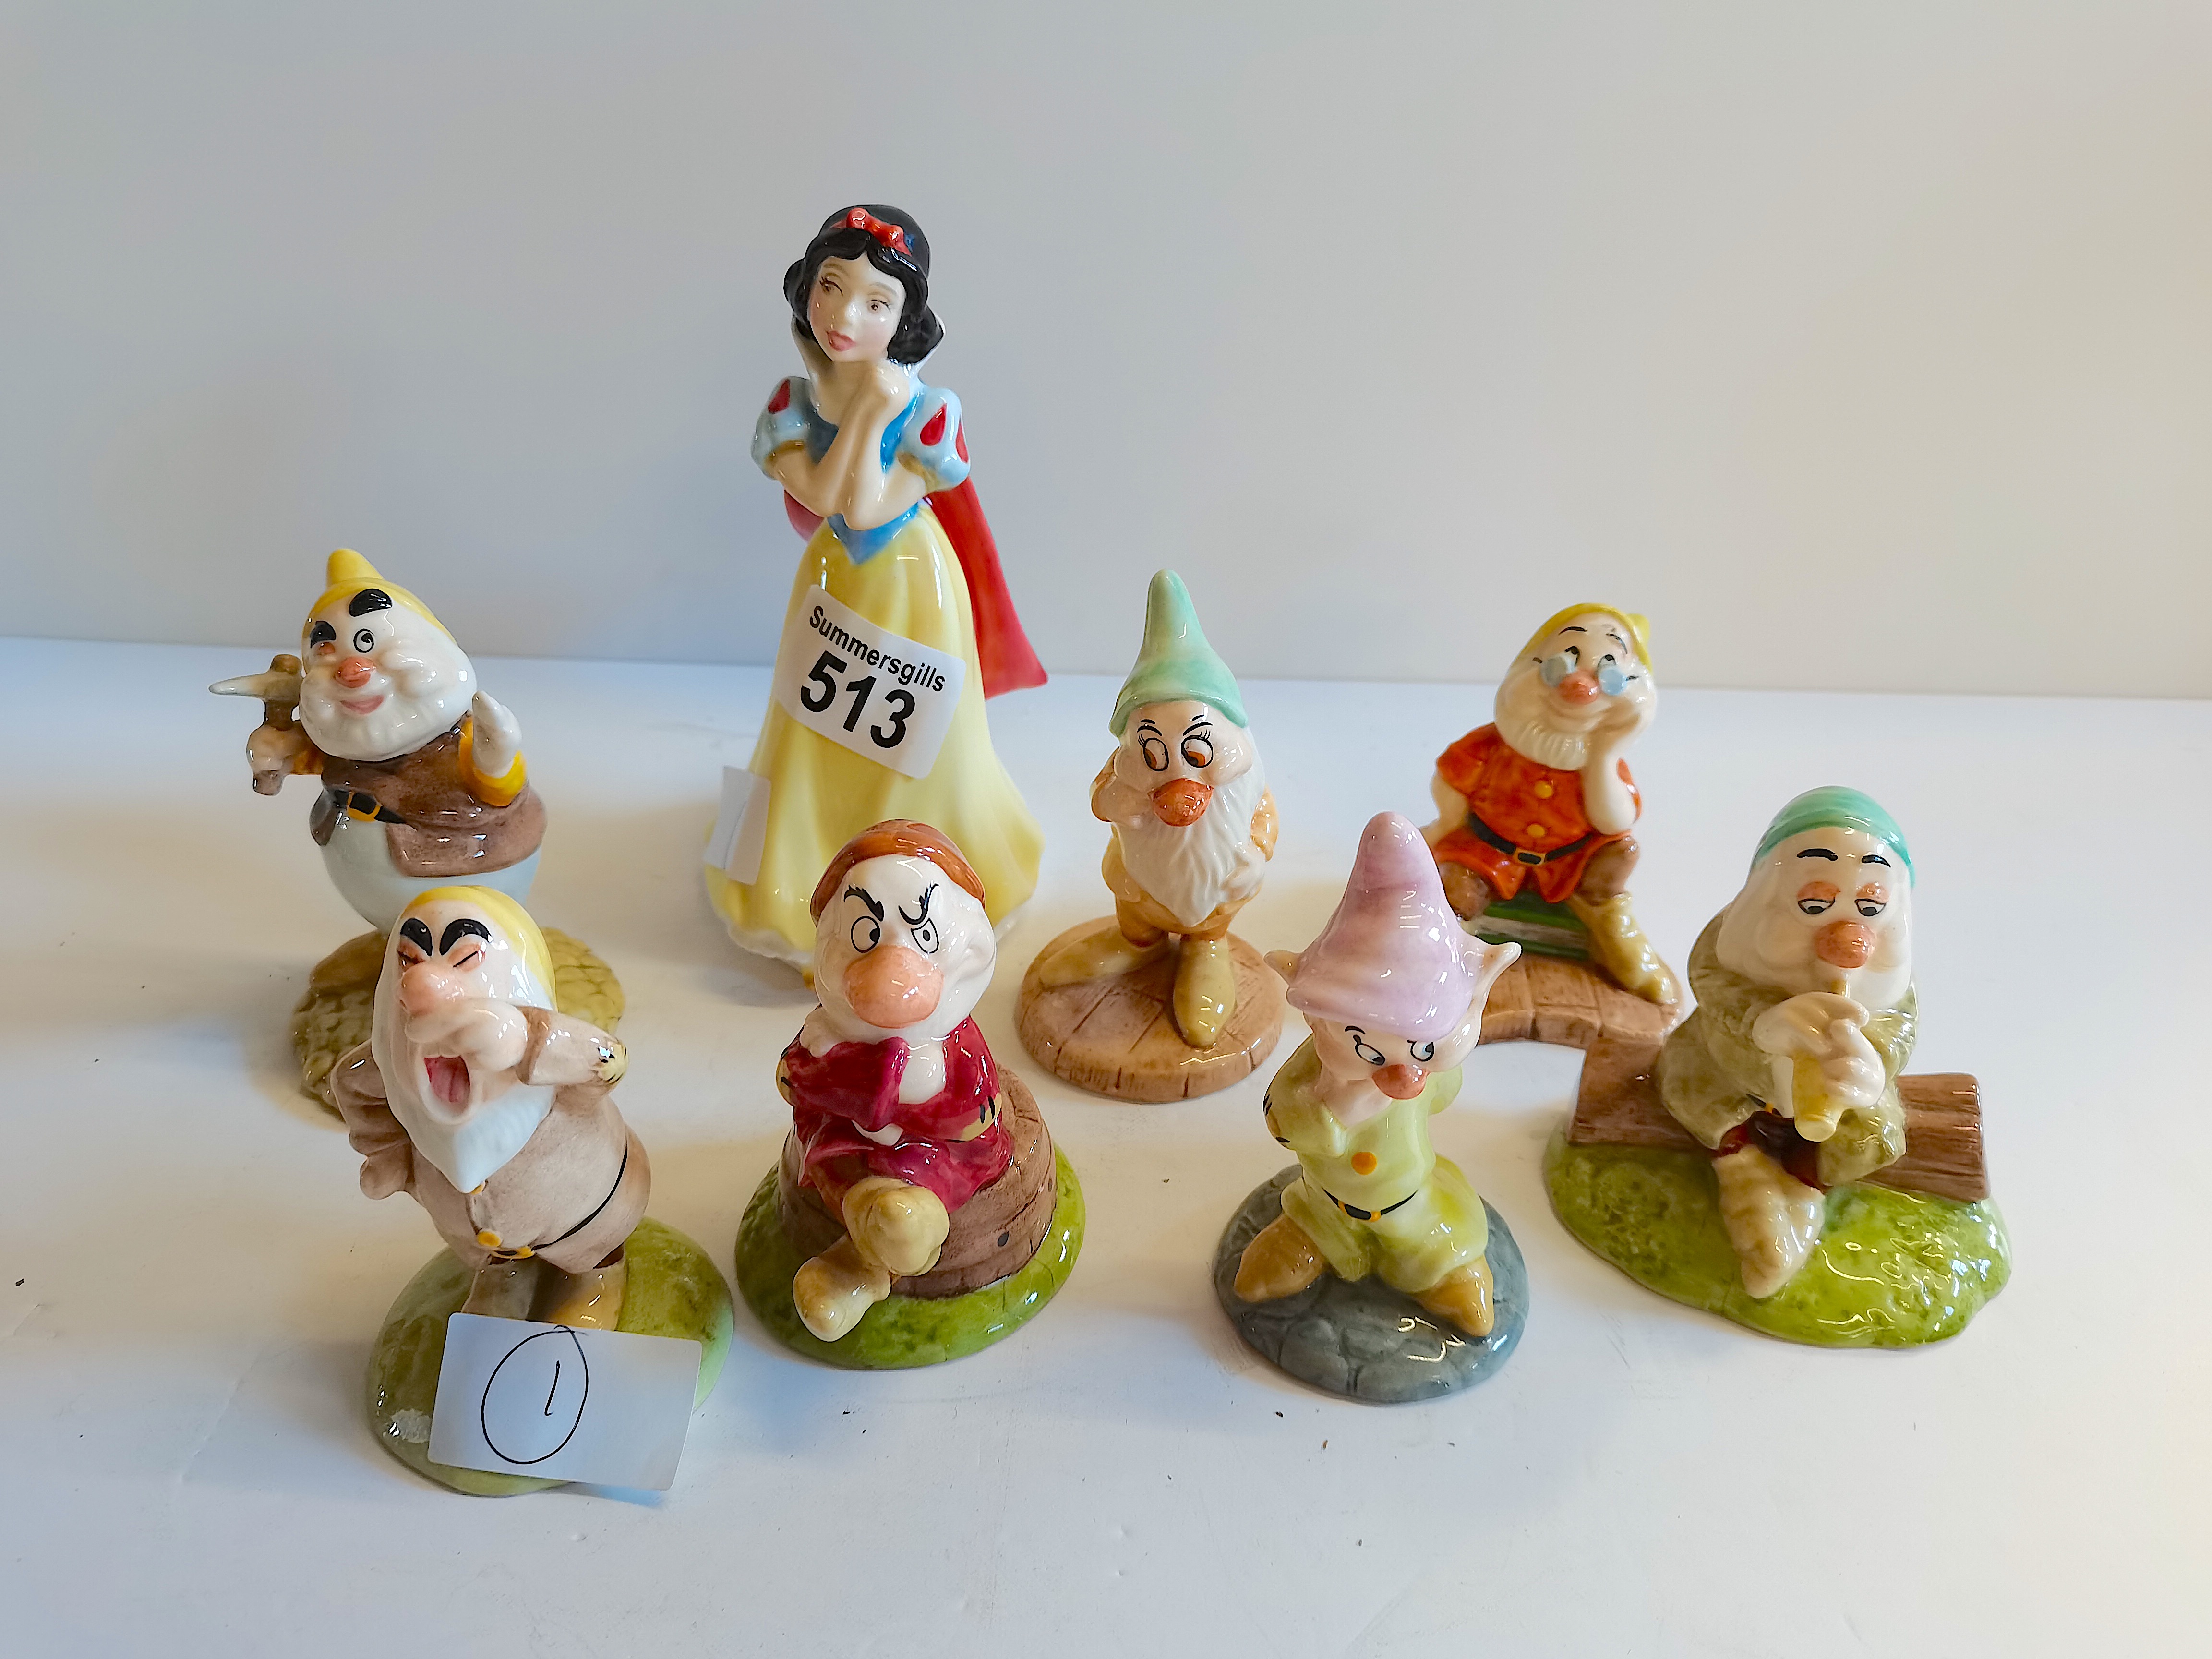 Doulton Snow White and 7 Dwarfs figures